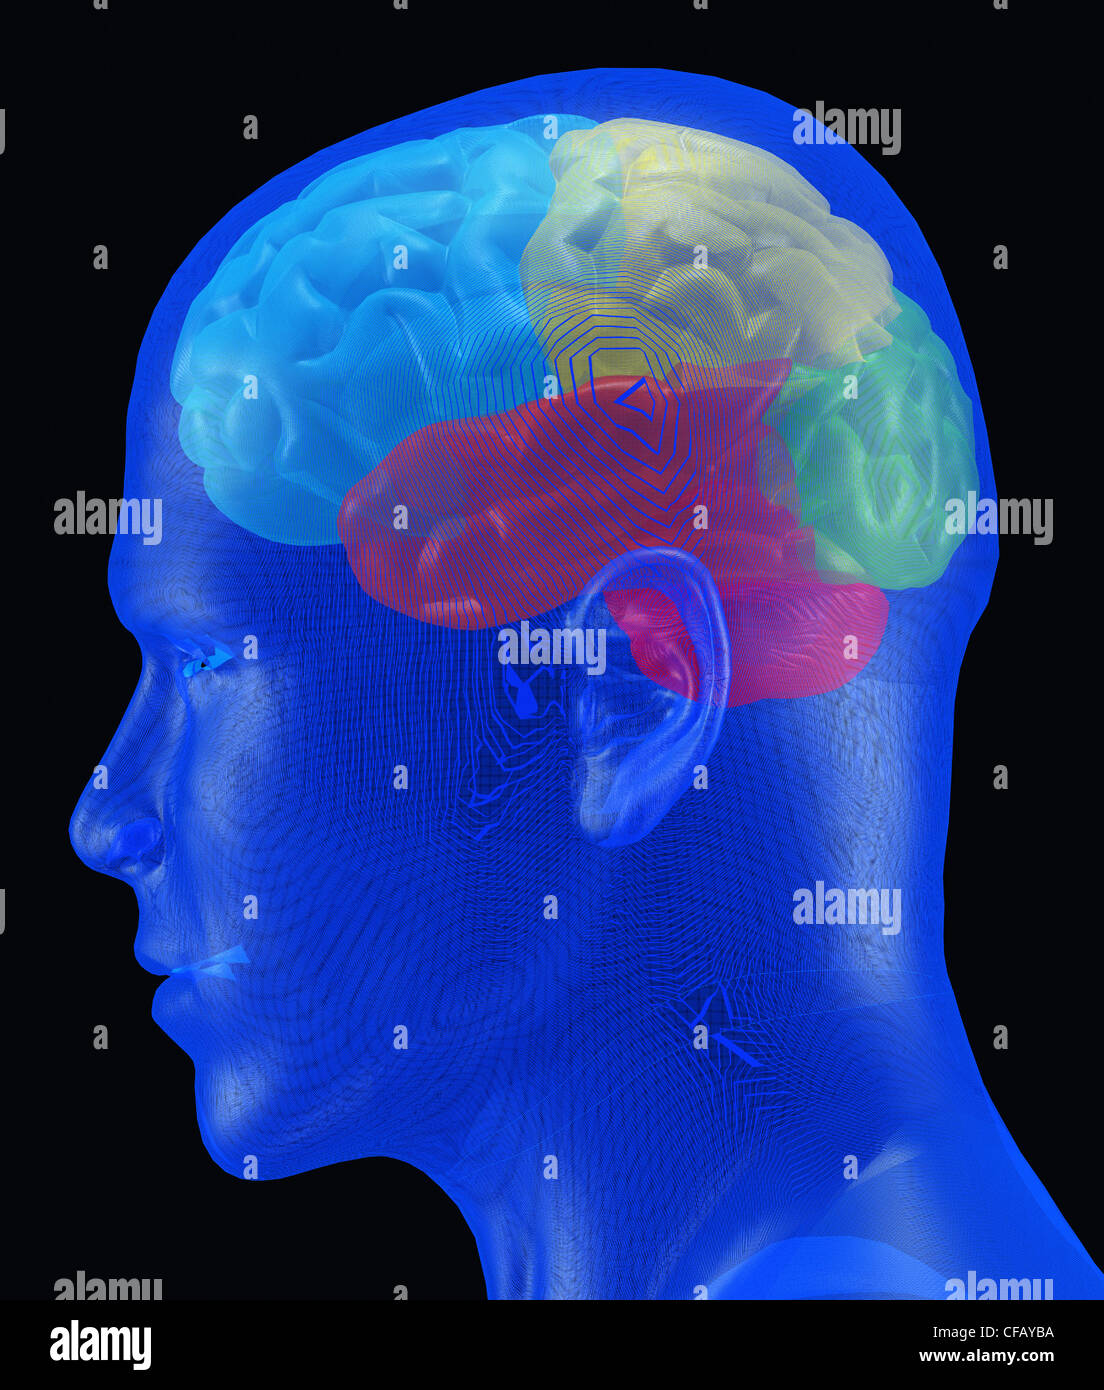 Gehirn. Ein menschliches Gehirn in verschiedenen Farben unter einer transparenten Netz-Abdeckung Stockfoto